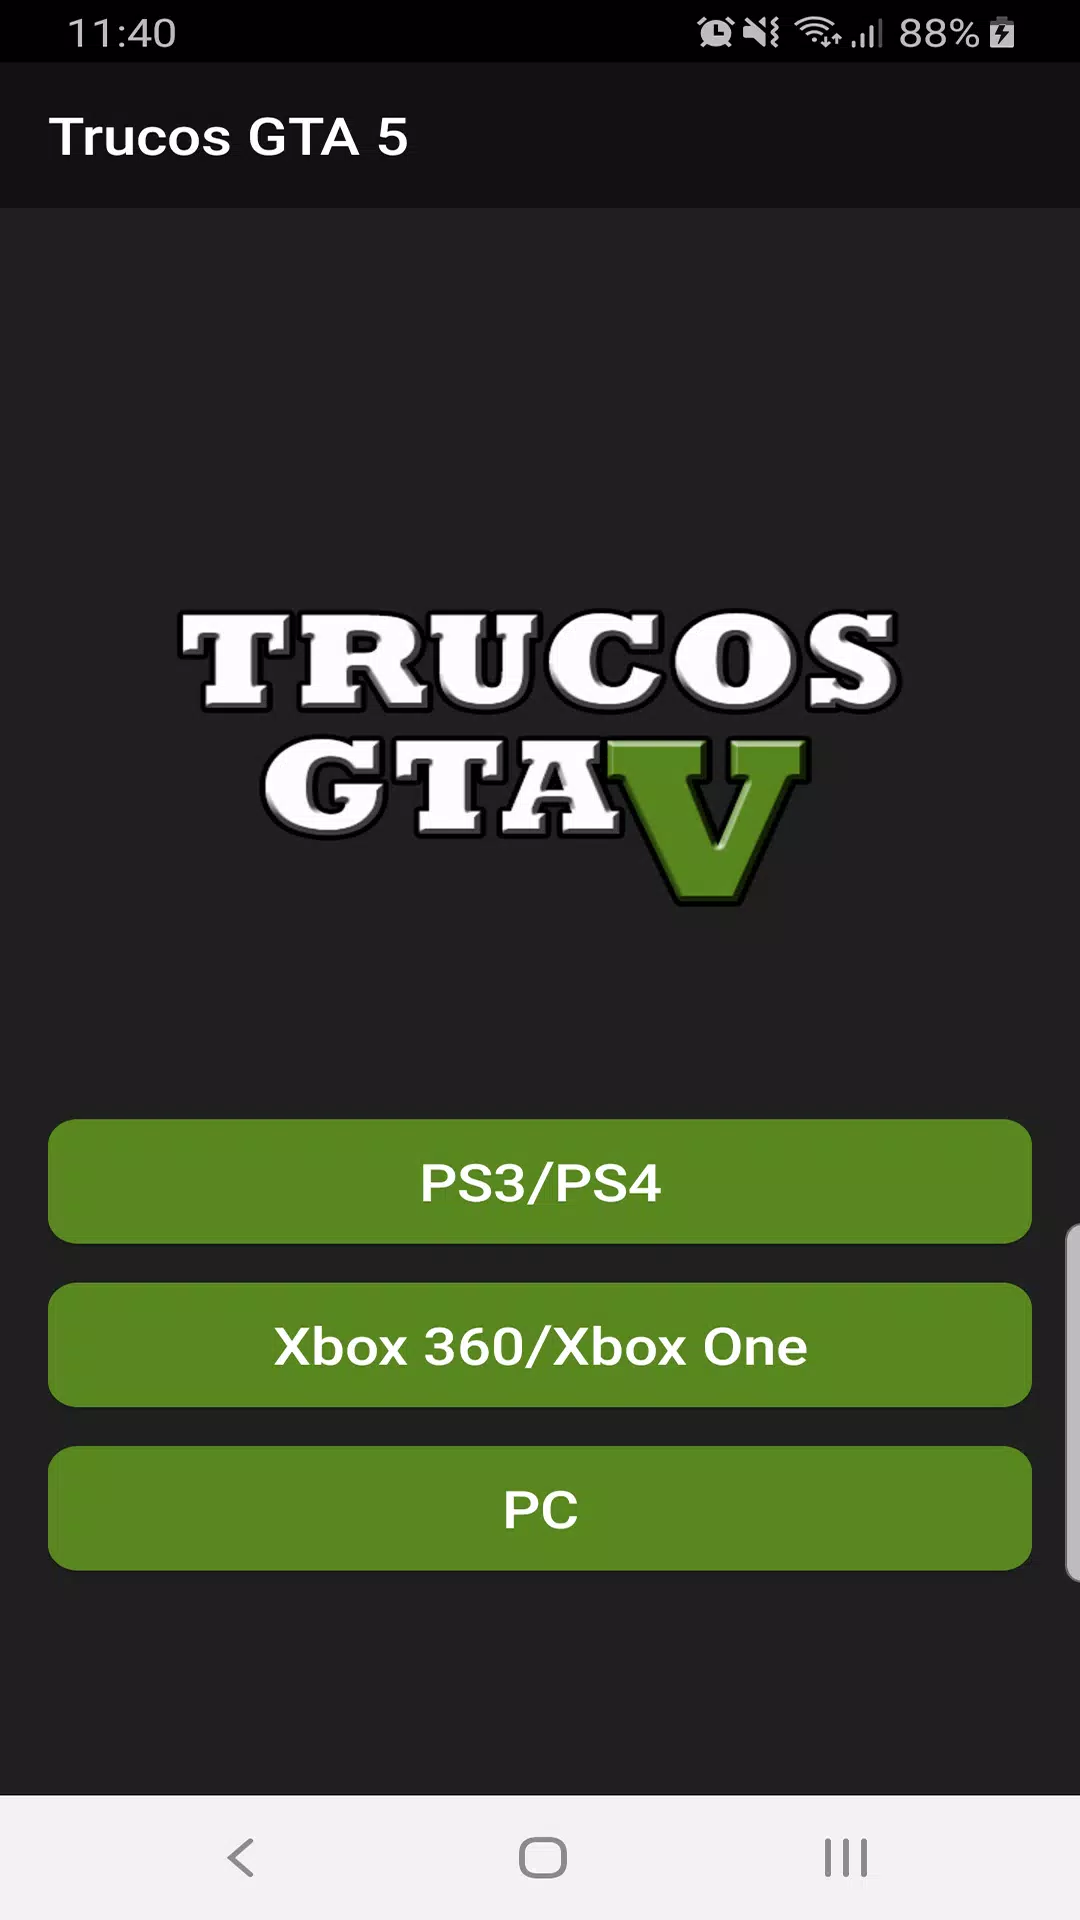 Trucos GTA 5 PS4 - Baixar APK para Android